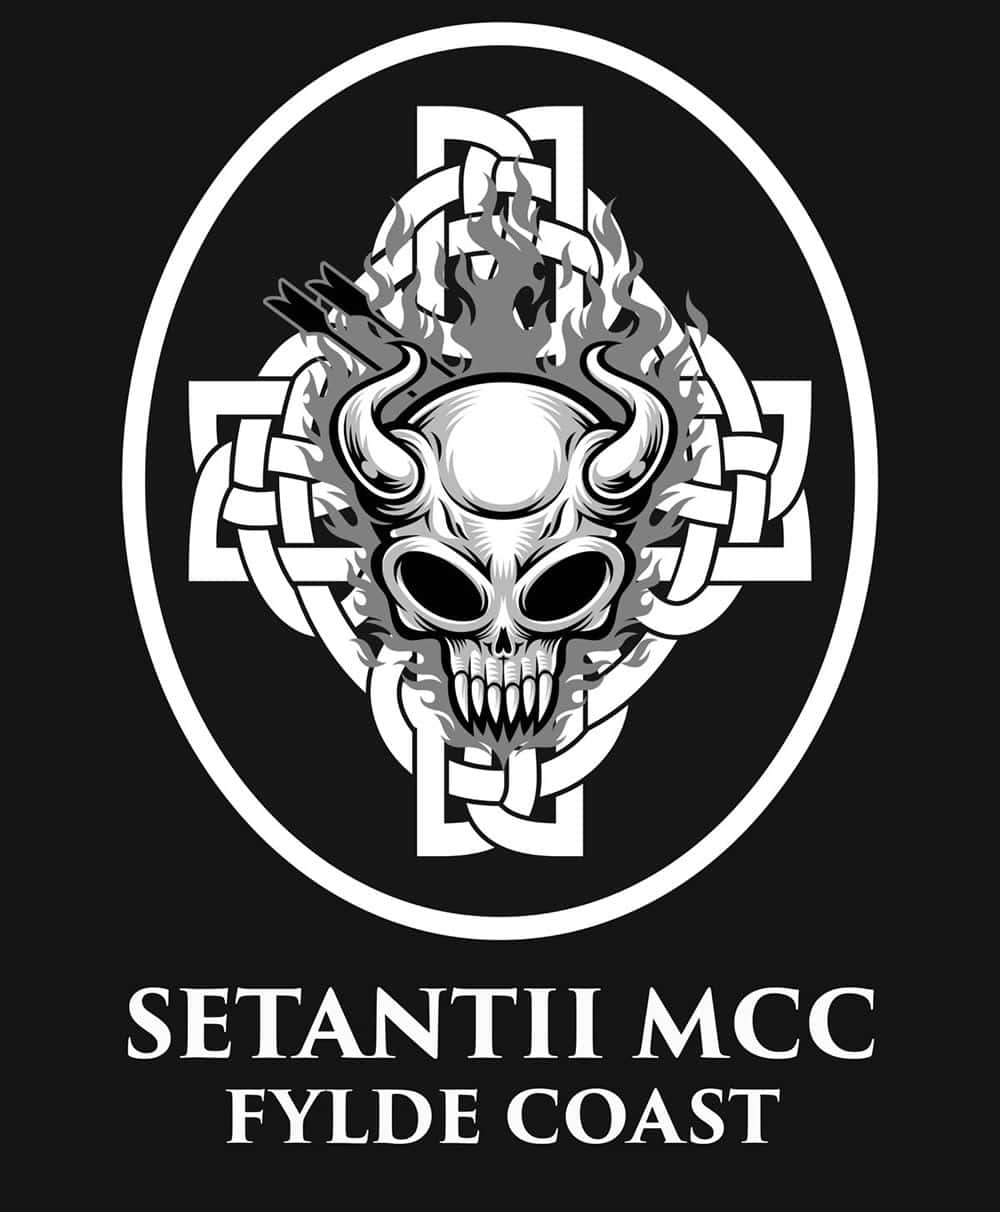 Setantii MCC